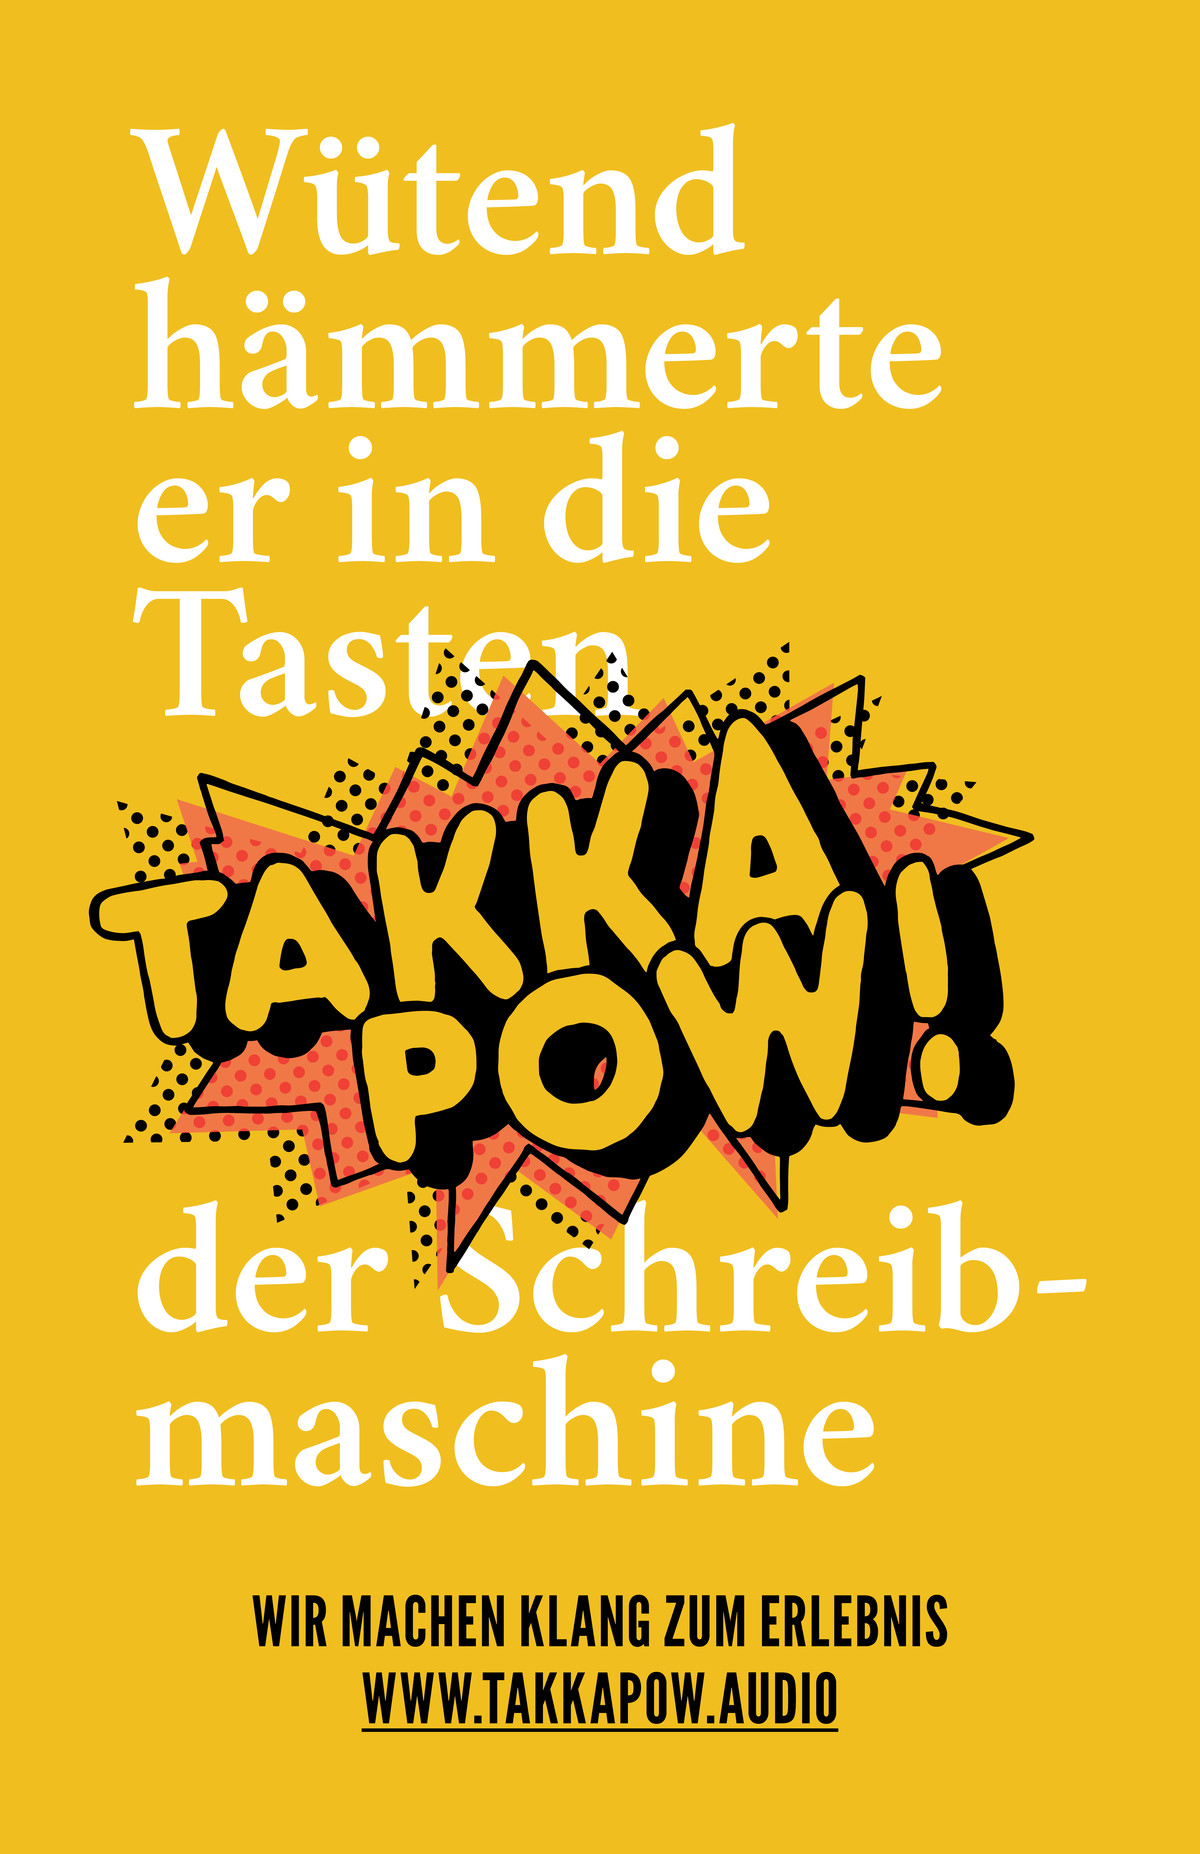 takkapow-text-01.jpg